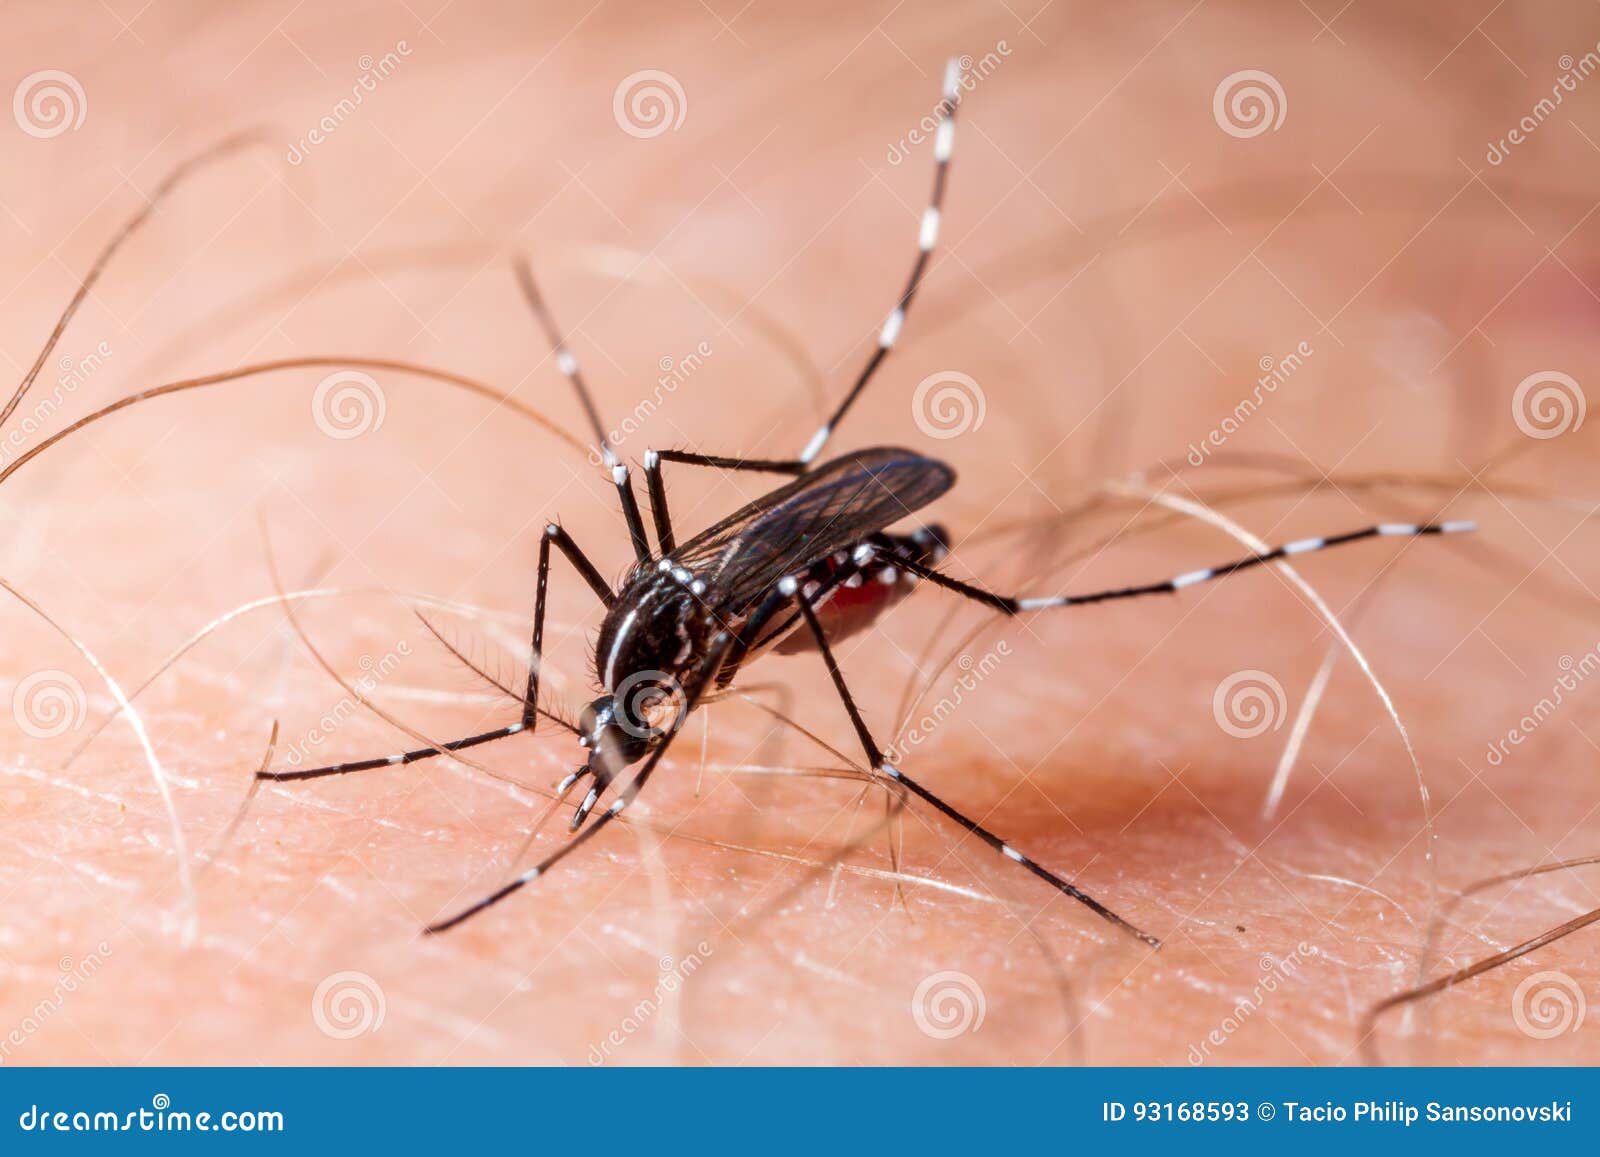 dengue, zika and chikungunya fever mosquito aedes albopictus bitting human skin